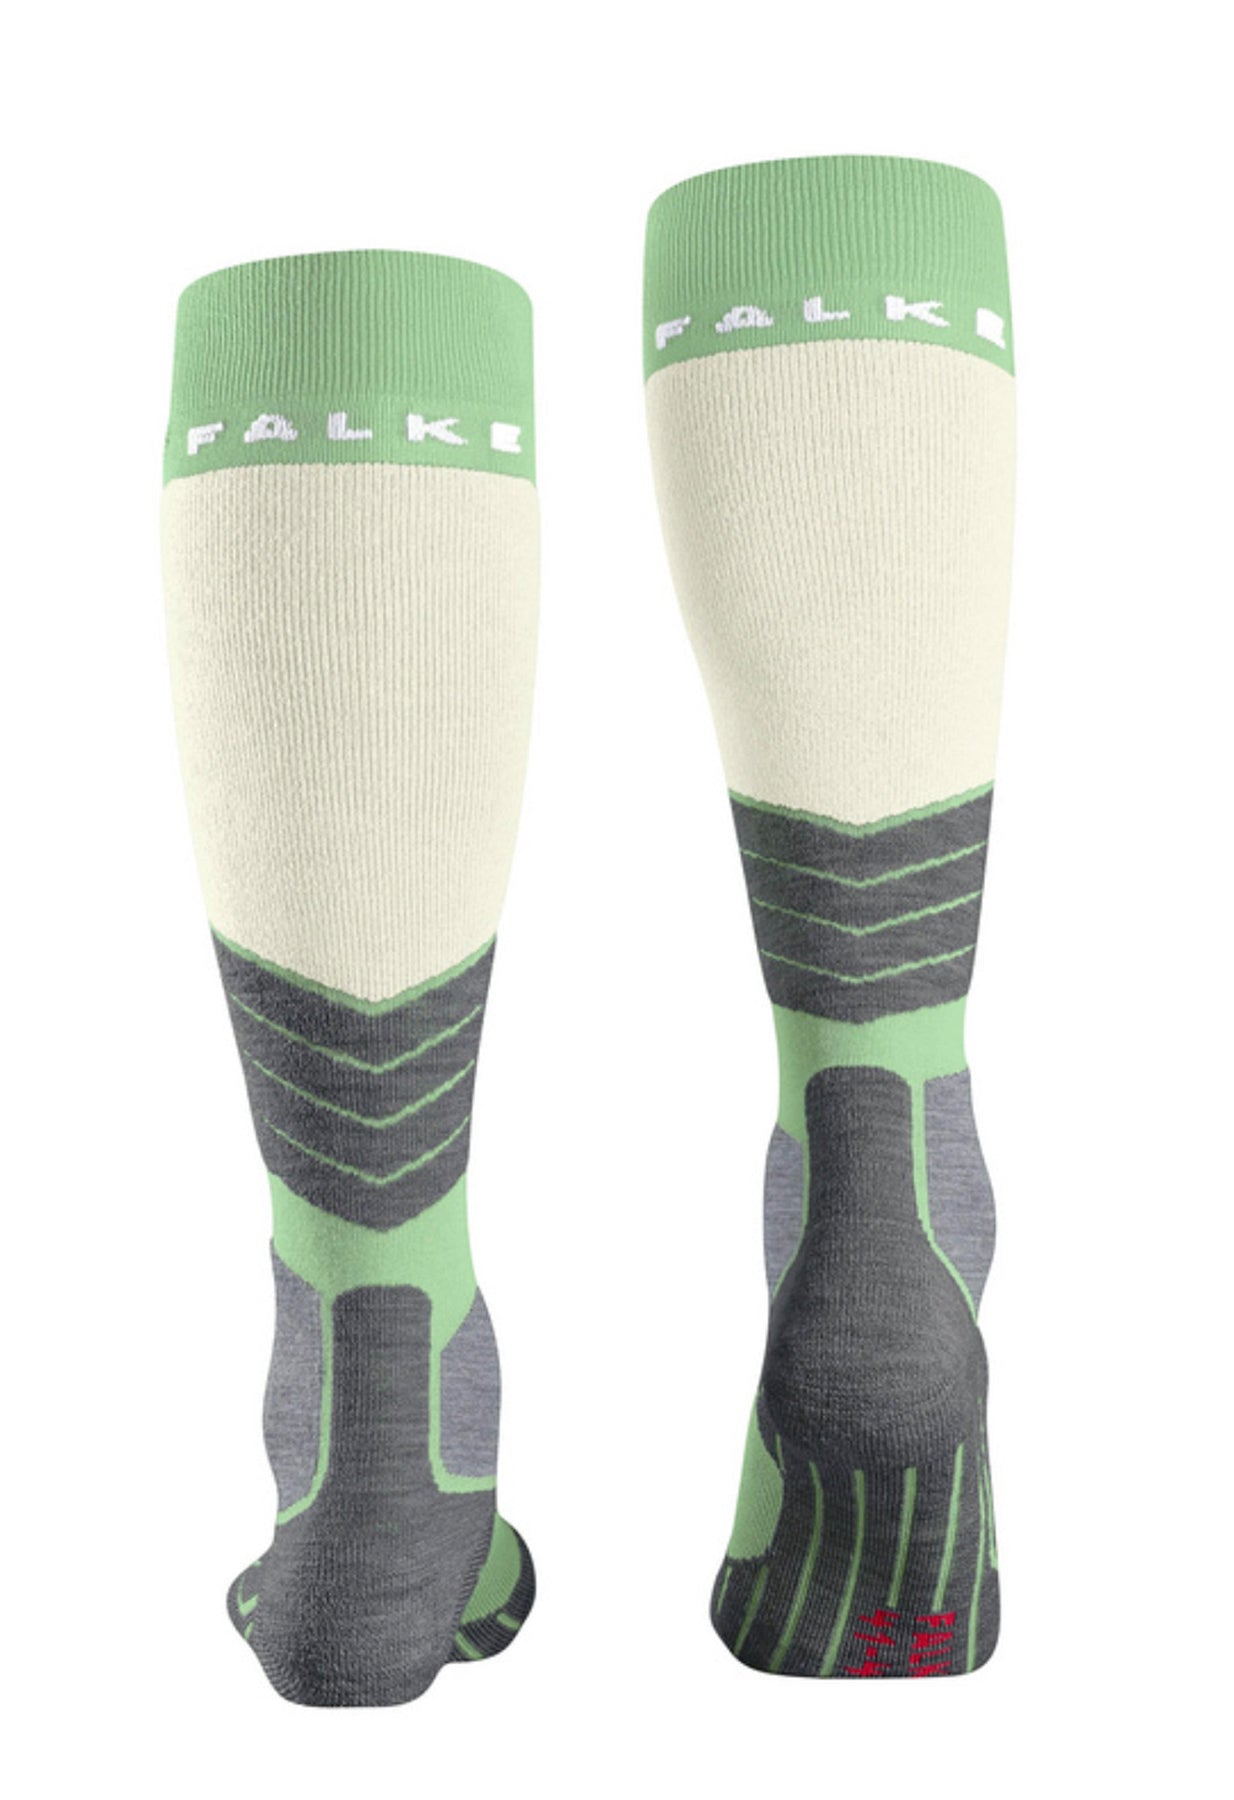 Falke SK2 Womens Ski Sock in Quiet Green